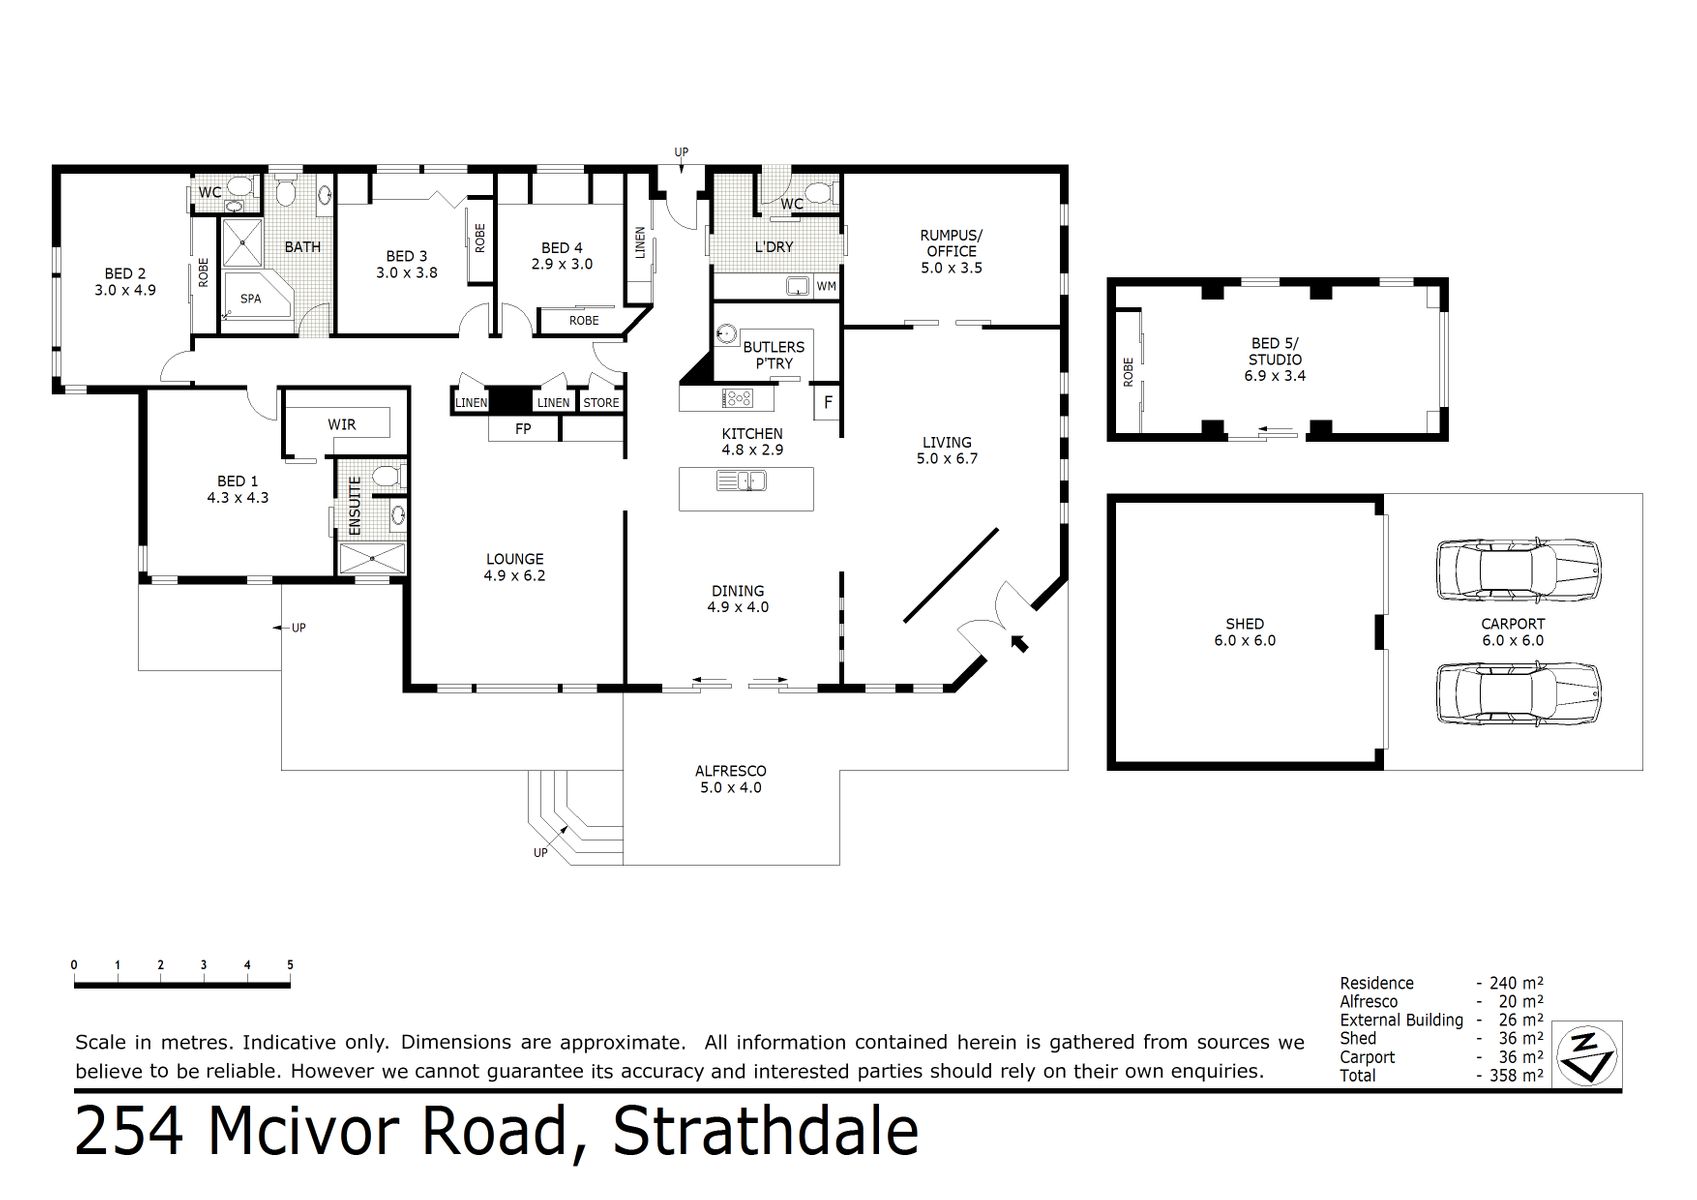 254 Mcivor Road Strathdale (08 DEC 2020) 266sqm (1)